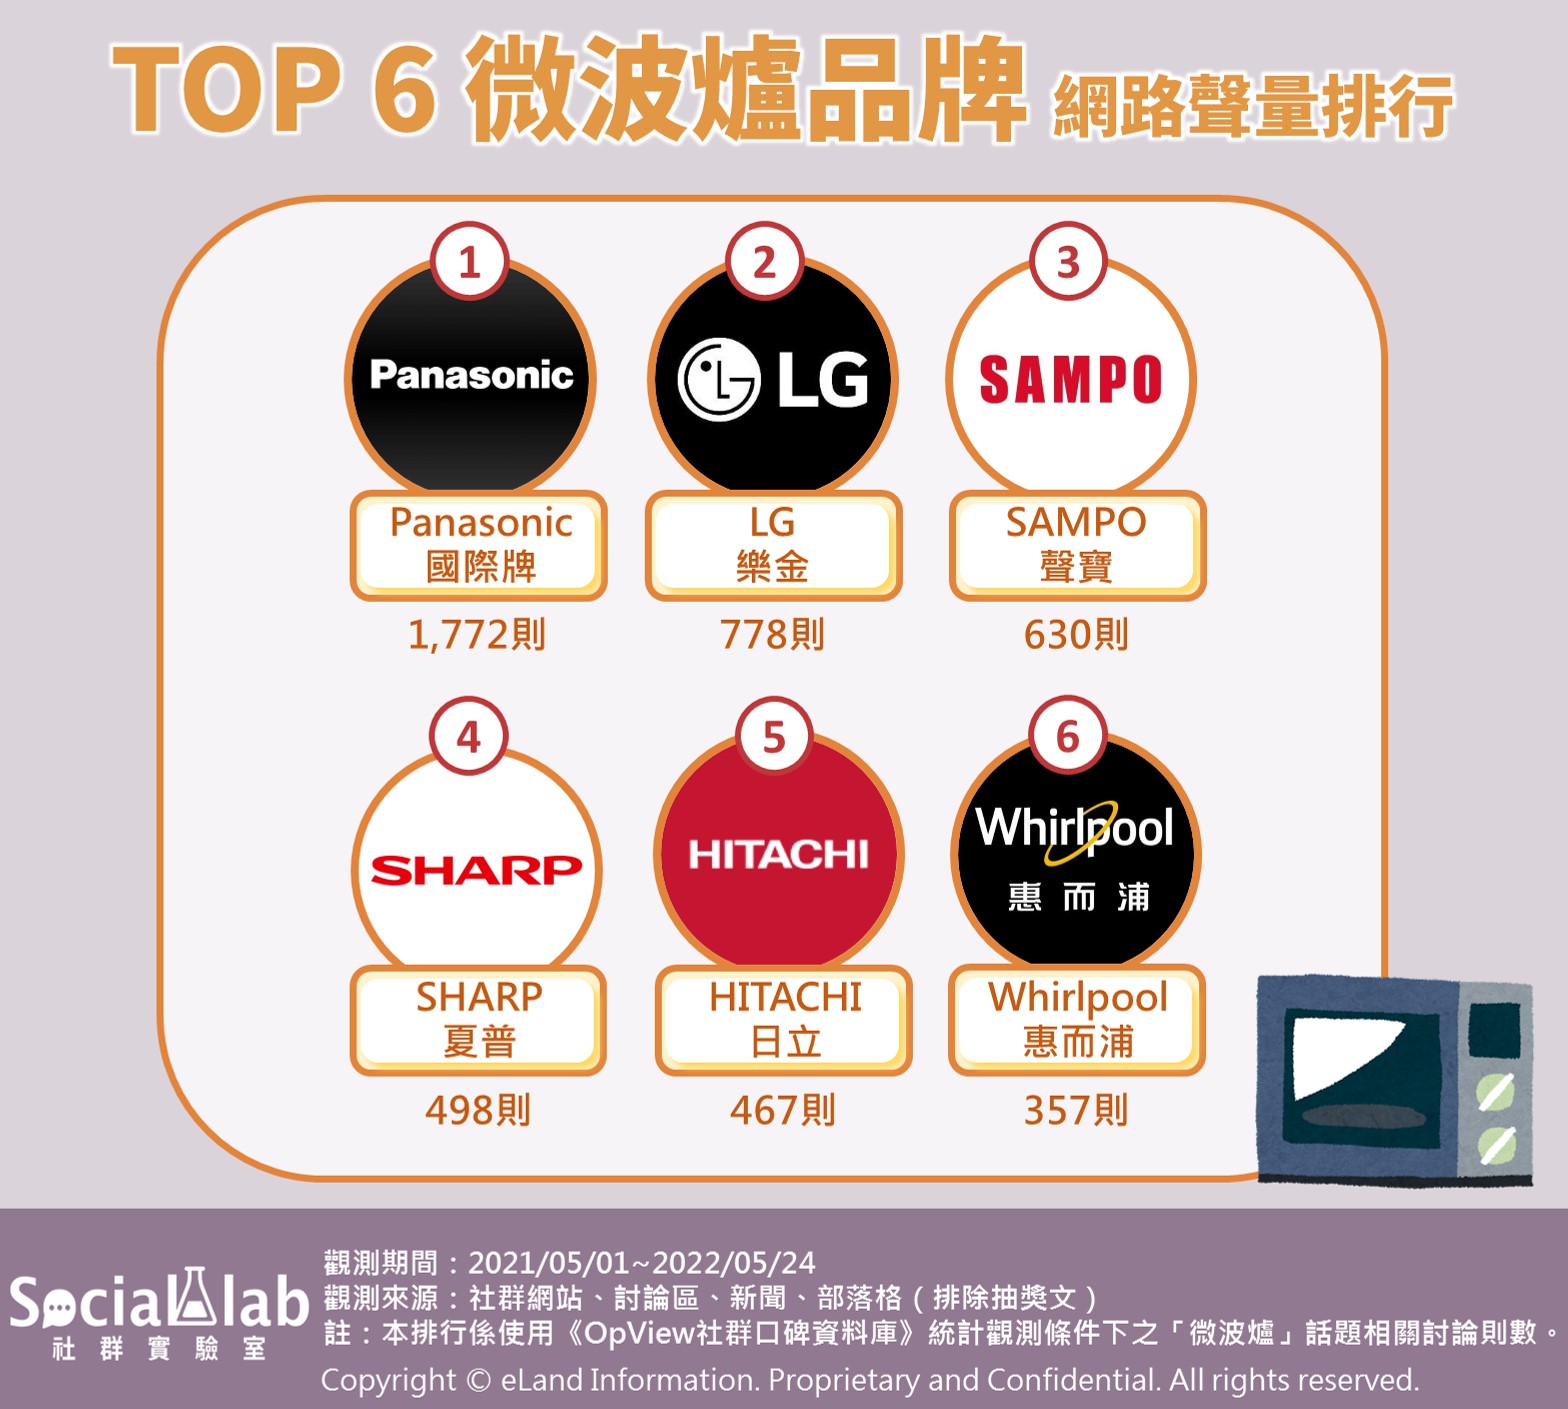 TOP6微波爐品牌 網路聲量排行